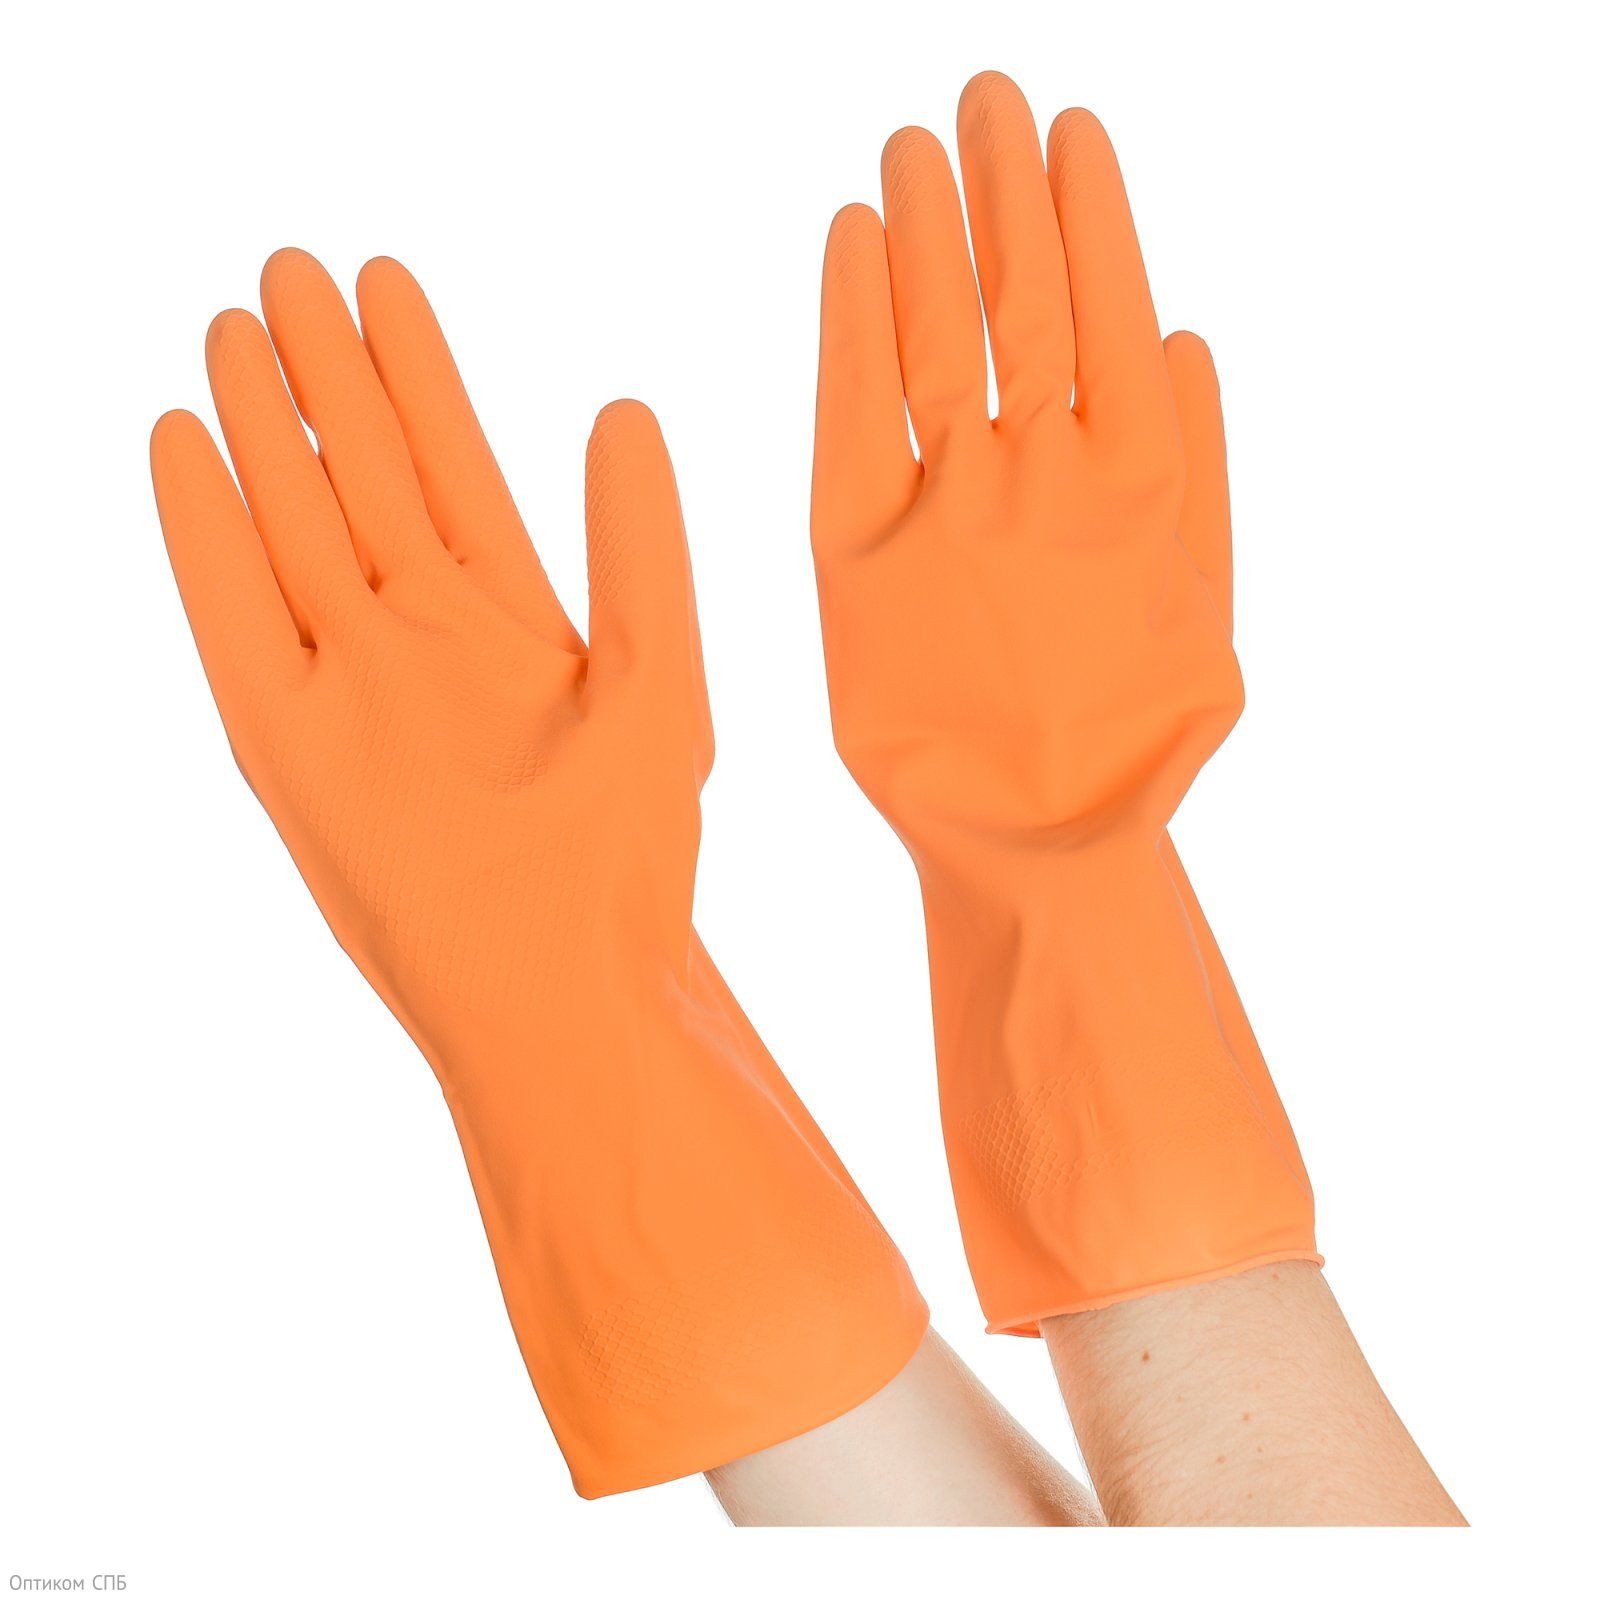 Перчатки резиновые хозяйственные Optilineприменяются для защиты рук во время уборки, стирки, мытья посуды, садовых и ремонтных рабор. Надежно защищают руки от воздействия влаги, грязи, механических повреждений. Внутреннее напыление из хлопка обеспечивает комфорт при использовании, позволяет легко снимать и надевать перчатки. Имеют противоскользящий текстурированный рисунок на ладони и пальцах для надежного захвата предметов. Размер L. Поставляются в полиэтиленовой упаковке.